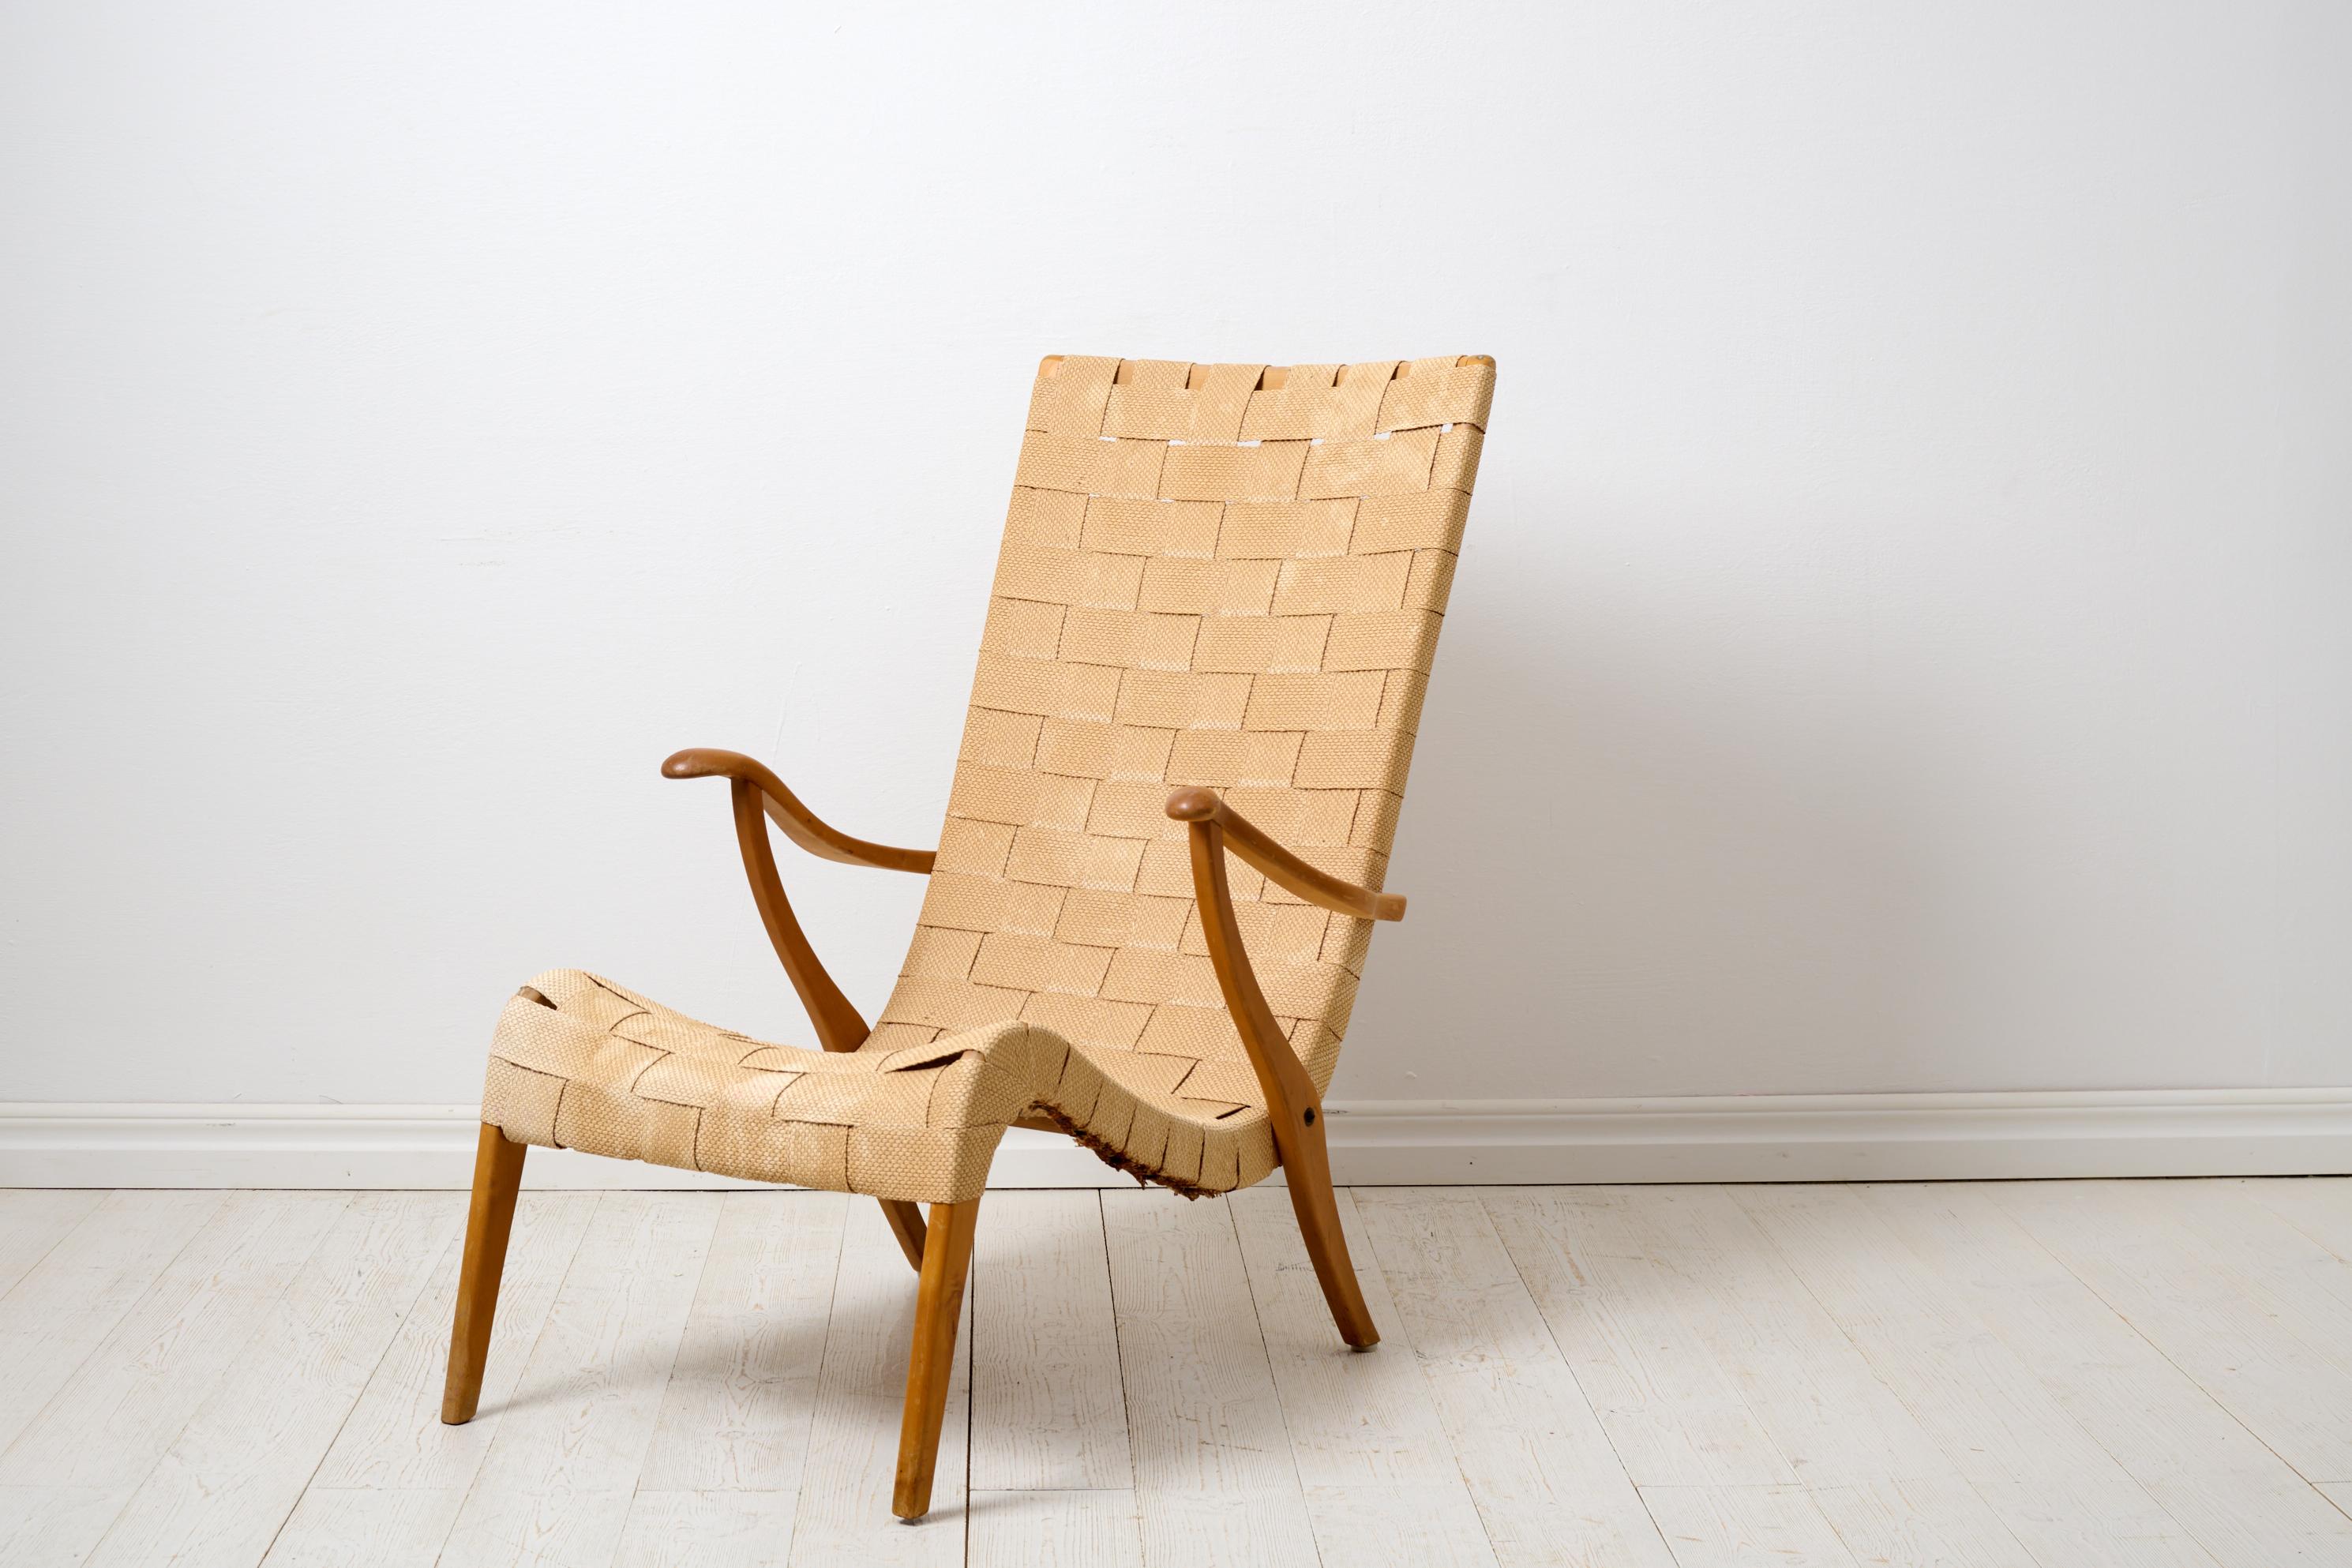 Fauteuil Vintage Axel Larsson pour Svenska Möbelfabrikerna Bodafors. La chaise est un meuble moderne scandinave suédois, conçu en 1937 et celle-ci a été fabriquée à la fin des années 1930 ou dans les années 1940. Sangles et tissage d'origine, avec